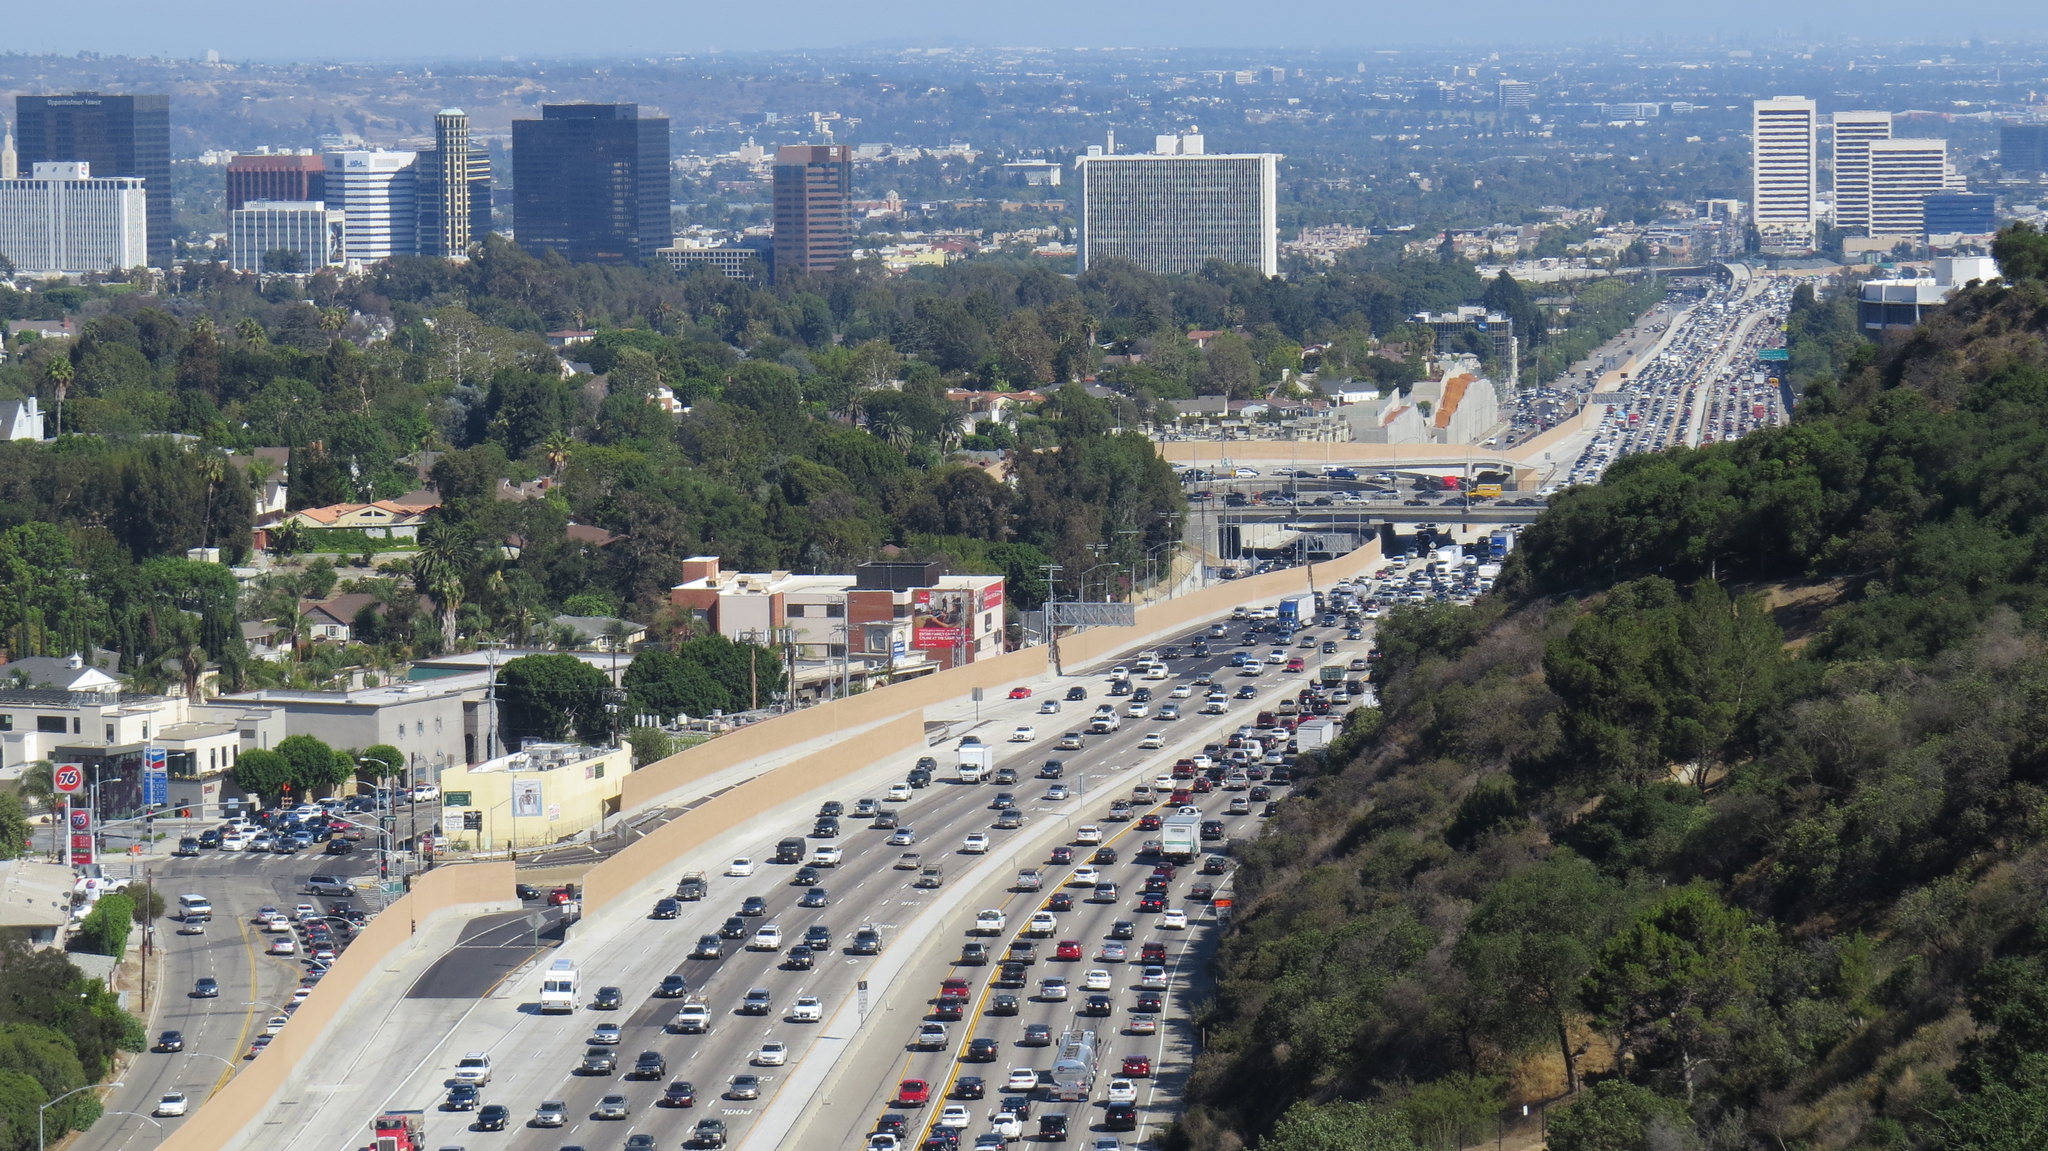 El tráfico de Los Ángeles, California, es uno de los más pesados y atestados del mundo. Foto: Flickr / Luke Jones